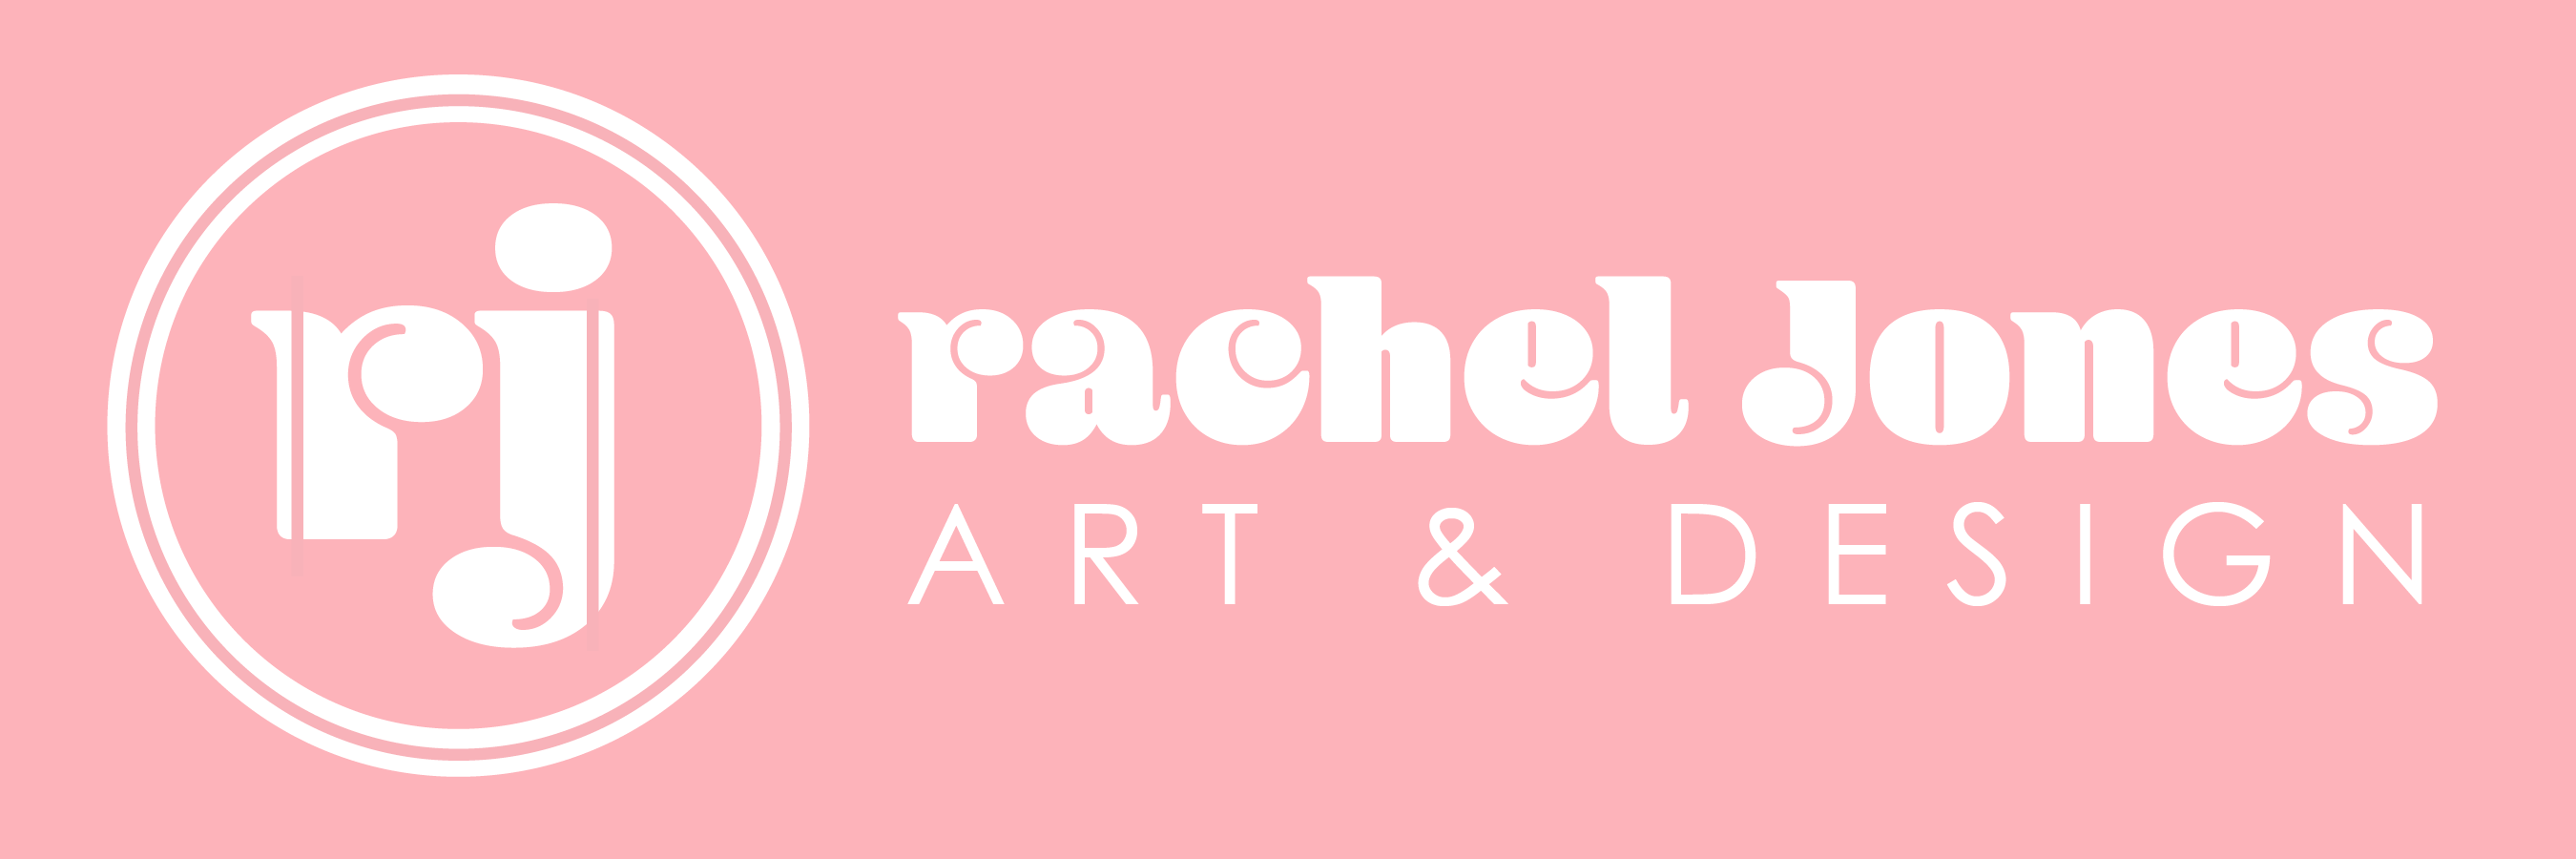 Rachel Jones Designs